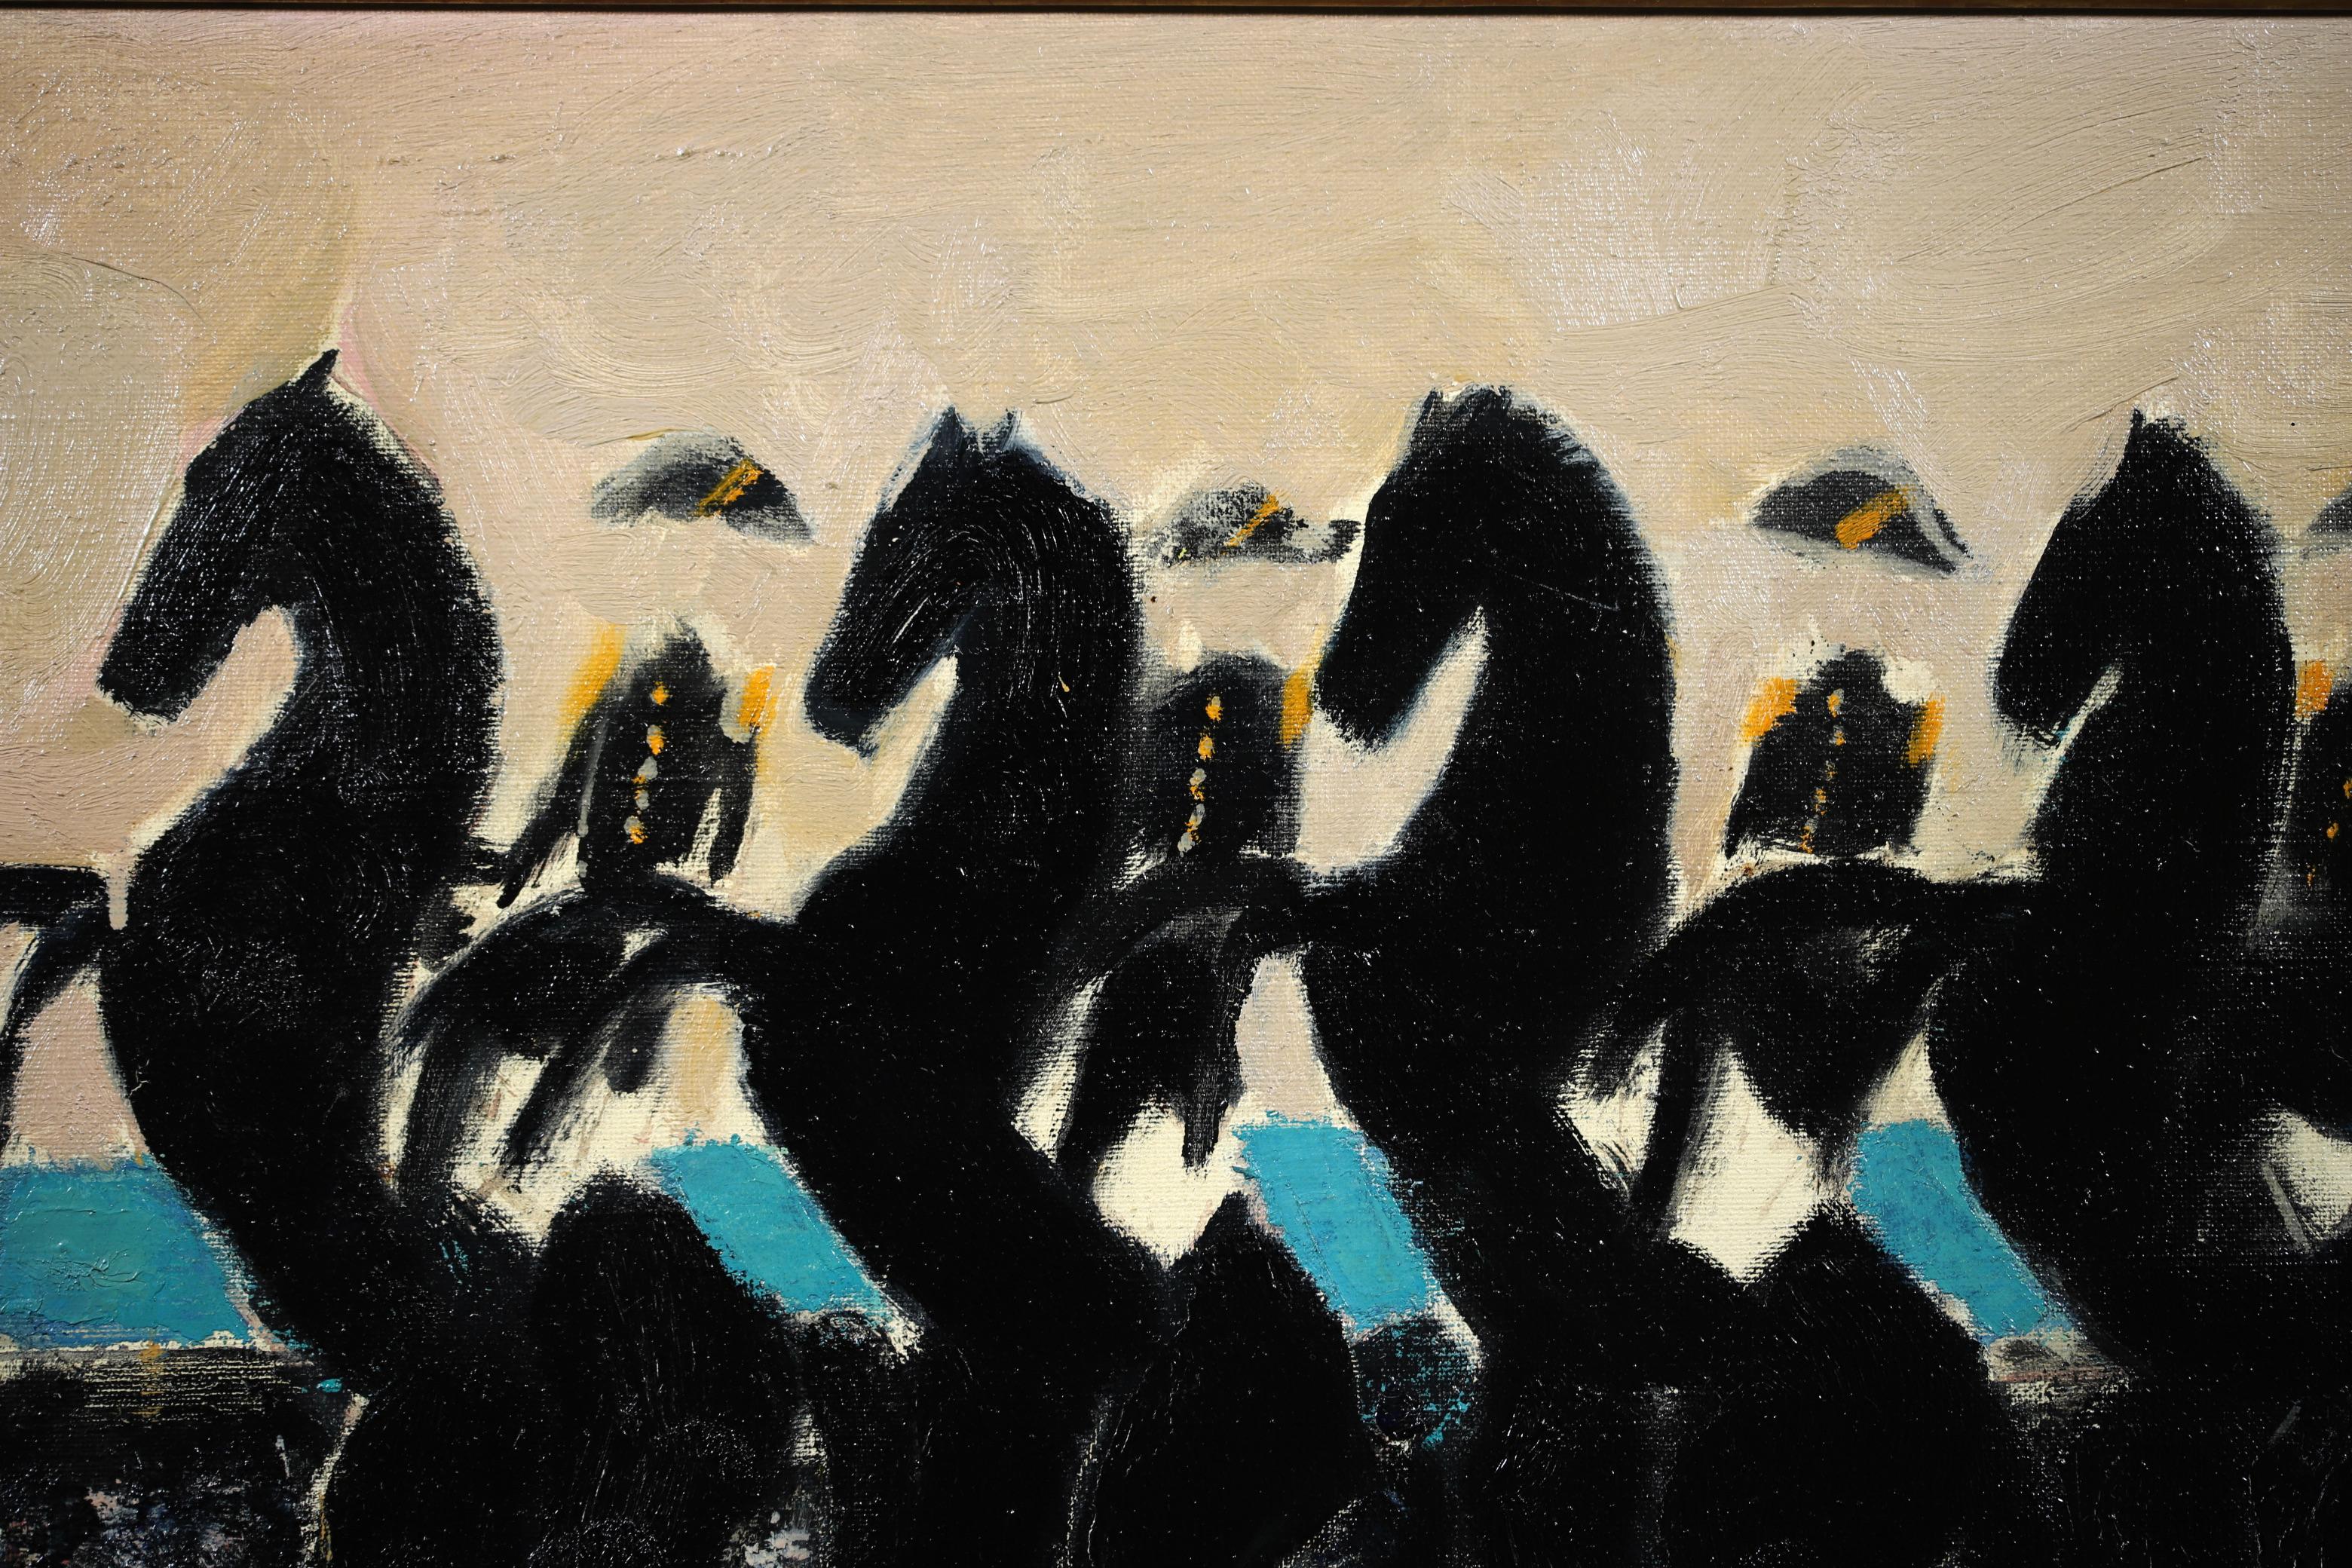 Huile sur toile signée, vers 1965, par le peintre expressionniste français Andre Brasilier. L'œuvre représente quatre militaires en uniforme de la marine française sur des chevaux noirs. Une pièce magnifique dans le style distinctif de